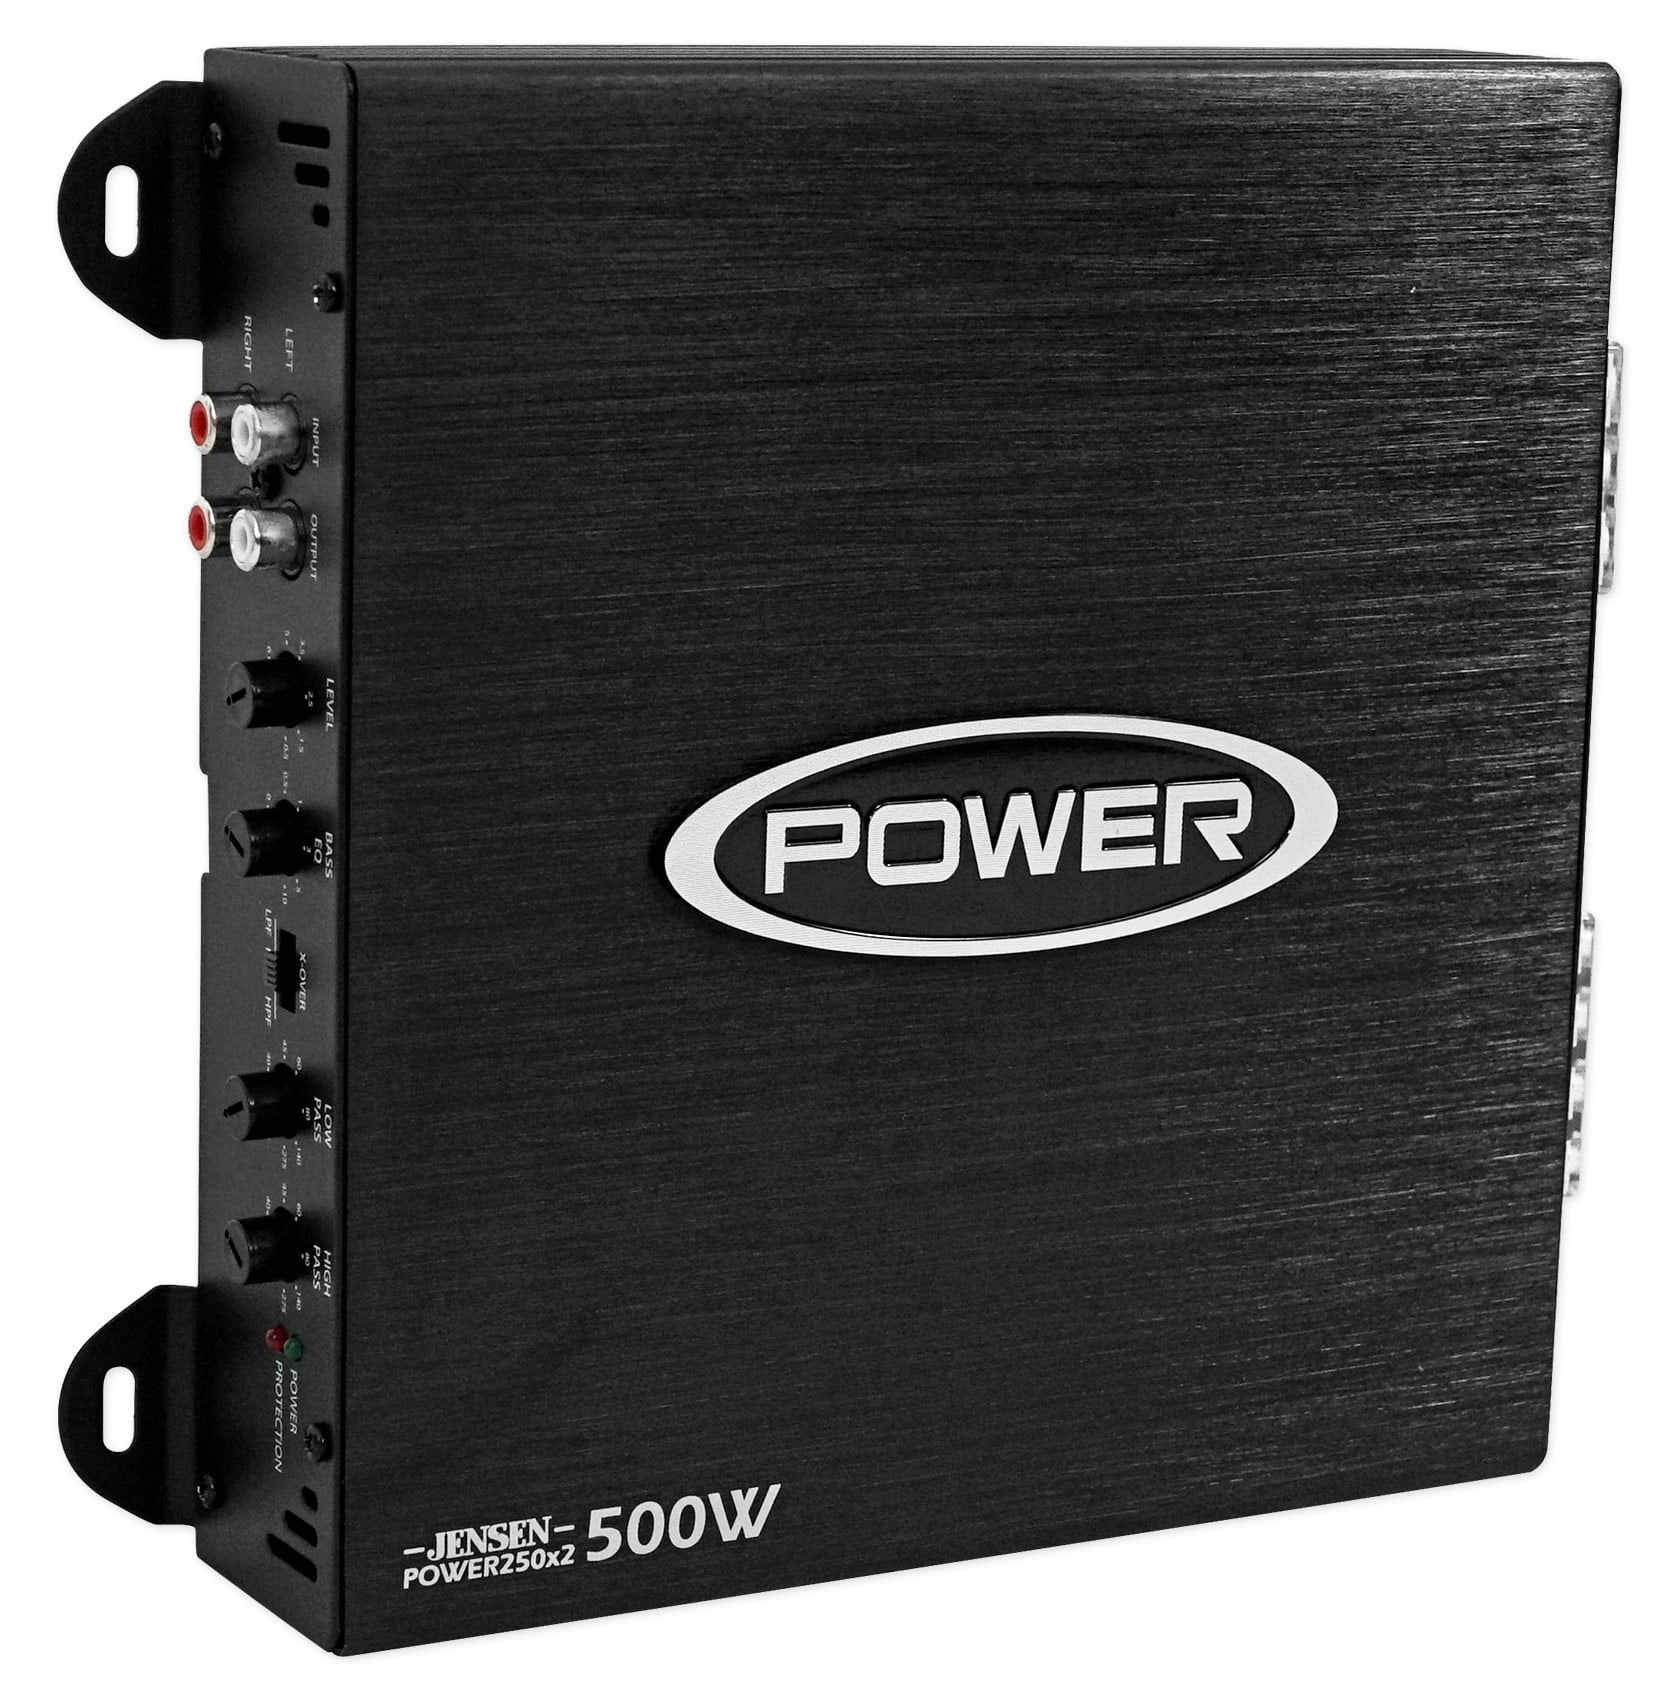 Jensen Power 250x2 Dual Channel Car Amplifier with 500 Watt Peak Performance